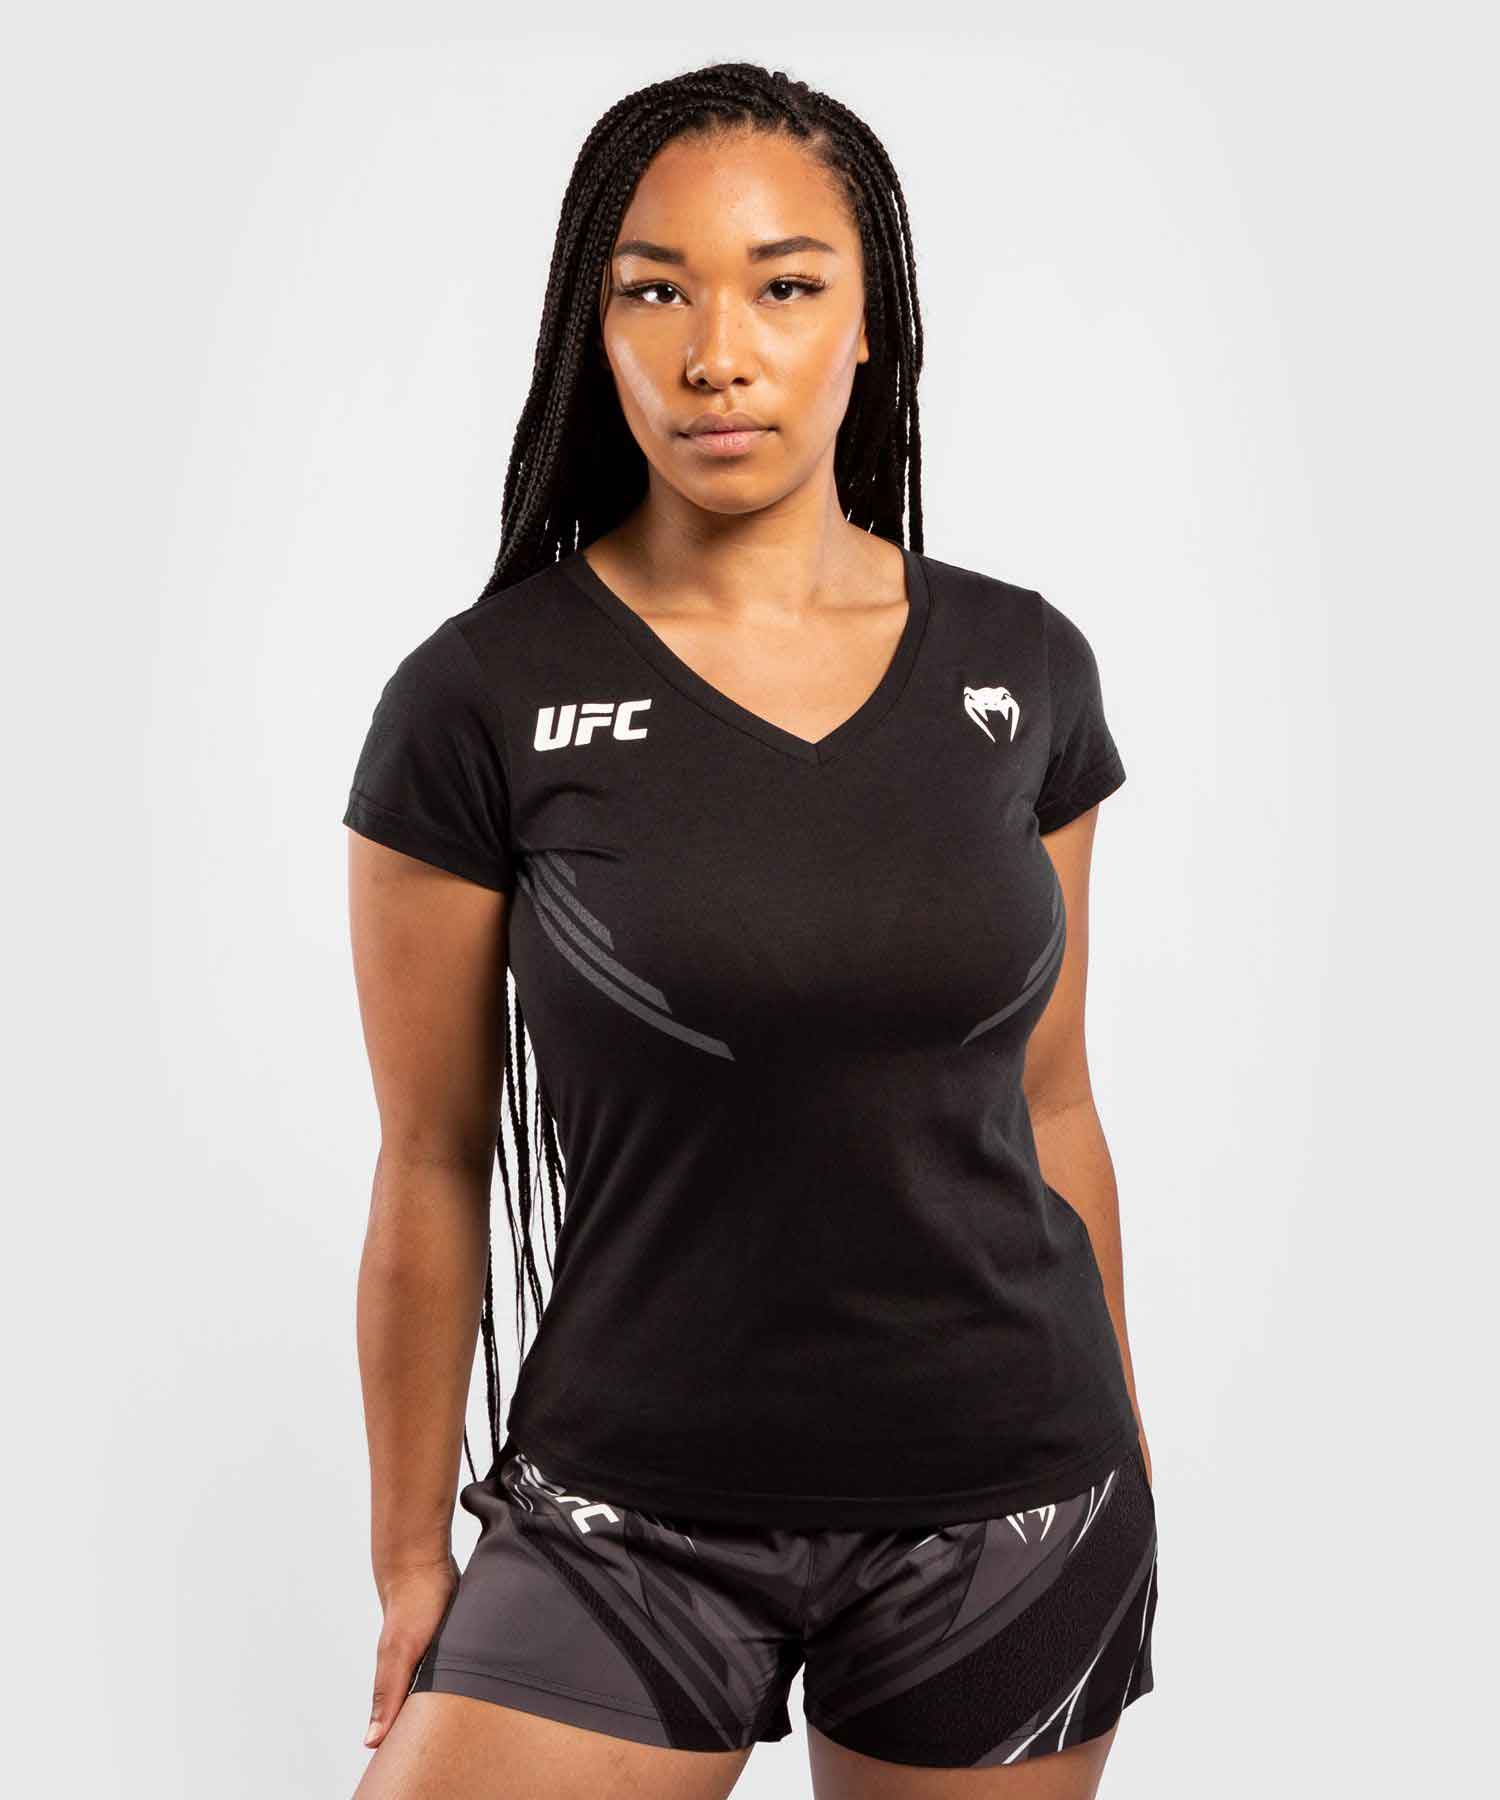 UFC VENUM REPLICA WOMEN'S JERSEY／UFC VENUM レプリカ レディース ジャージ（黒）